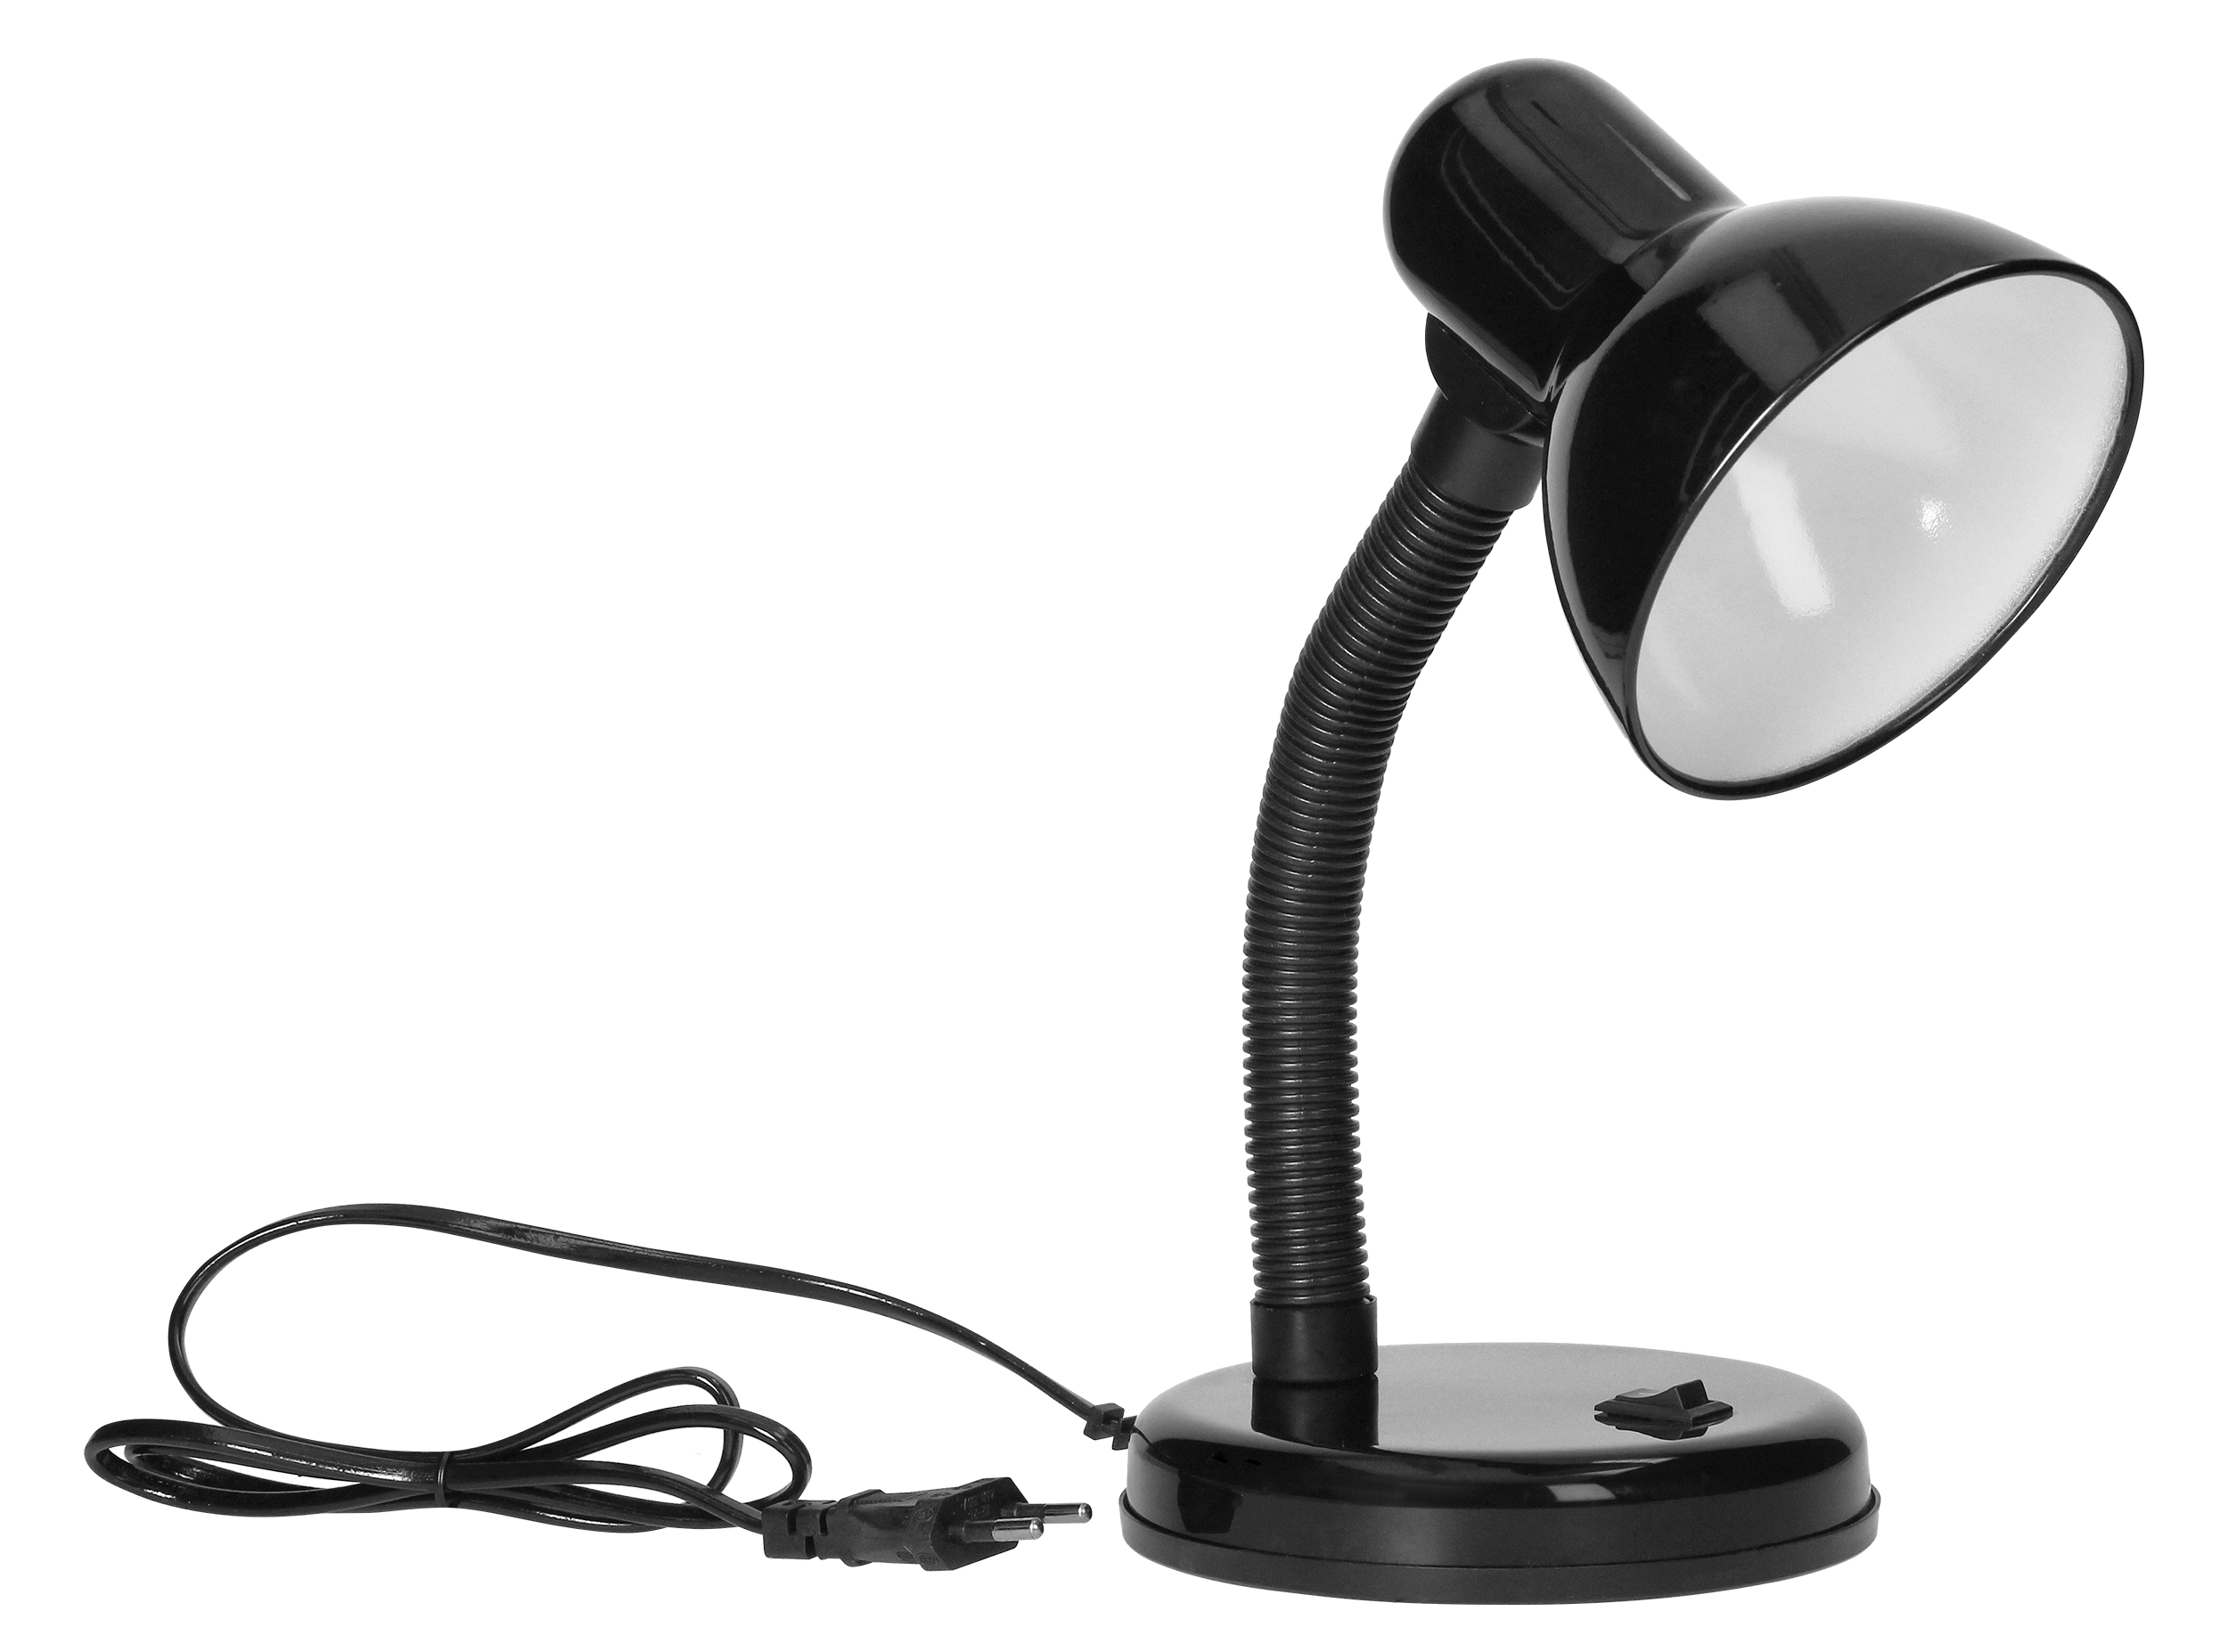 Lampa de birou VIRONE FUPI DL-4/B, E27, 40 W, IP20, cablu 1 m, brat flexibil, otel + plastic, negru